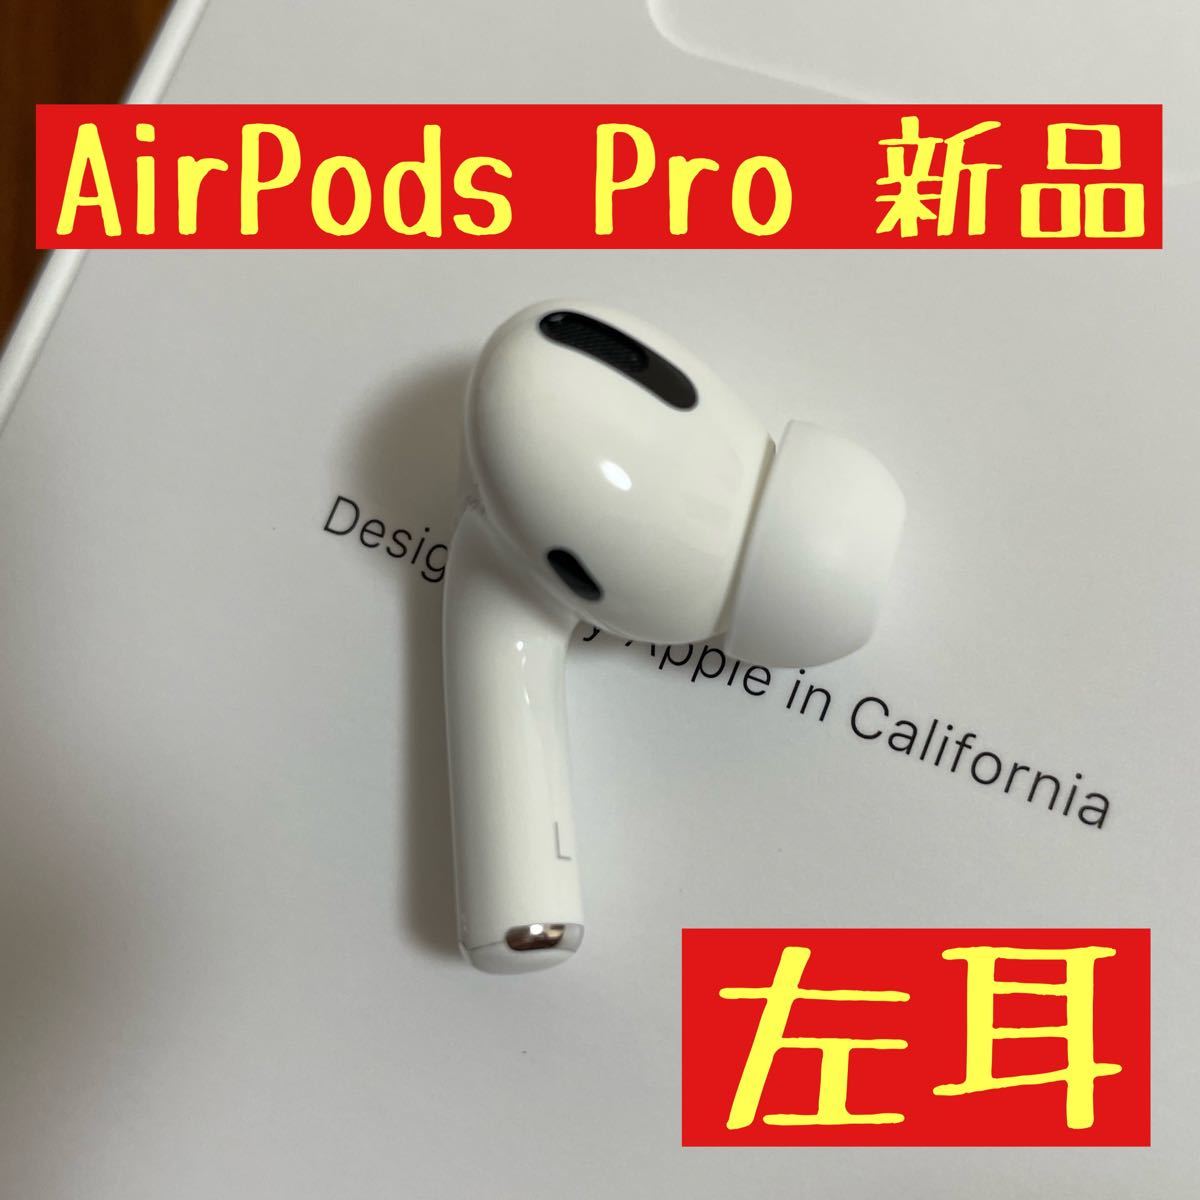 オーディオ機器 イヤフォン ブランド 新品 AirPods Pro イヤホン L左耳 のみ 片耳 【MWP22J/A 